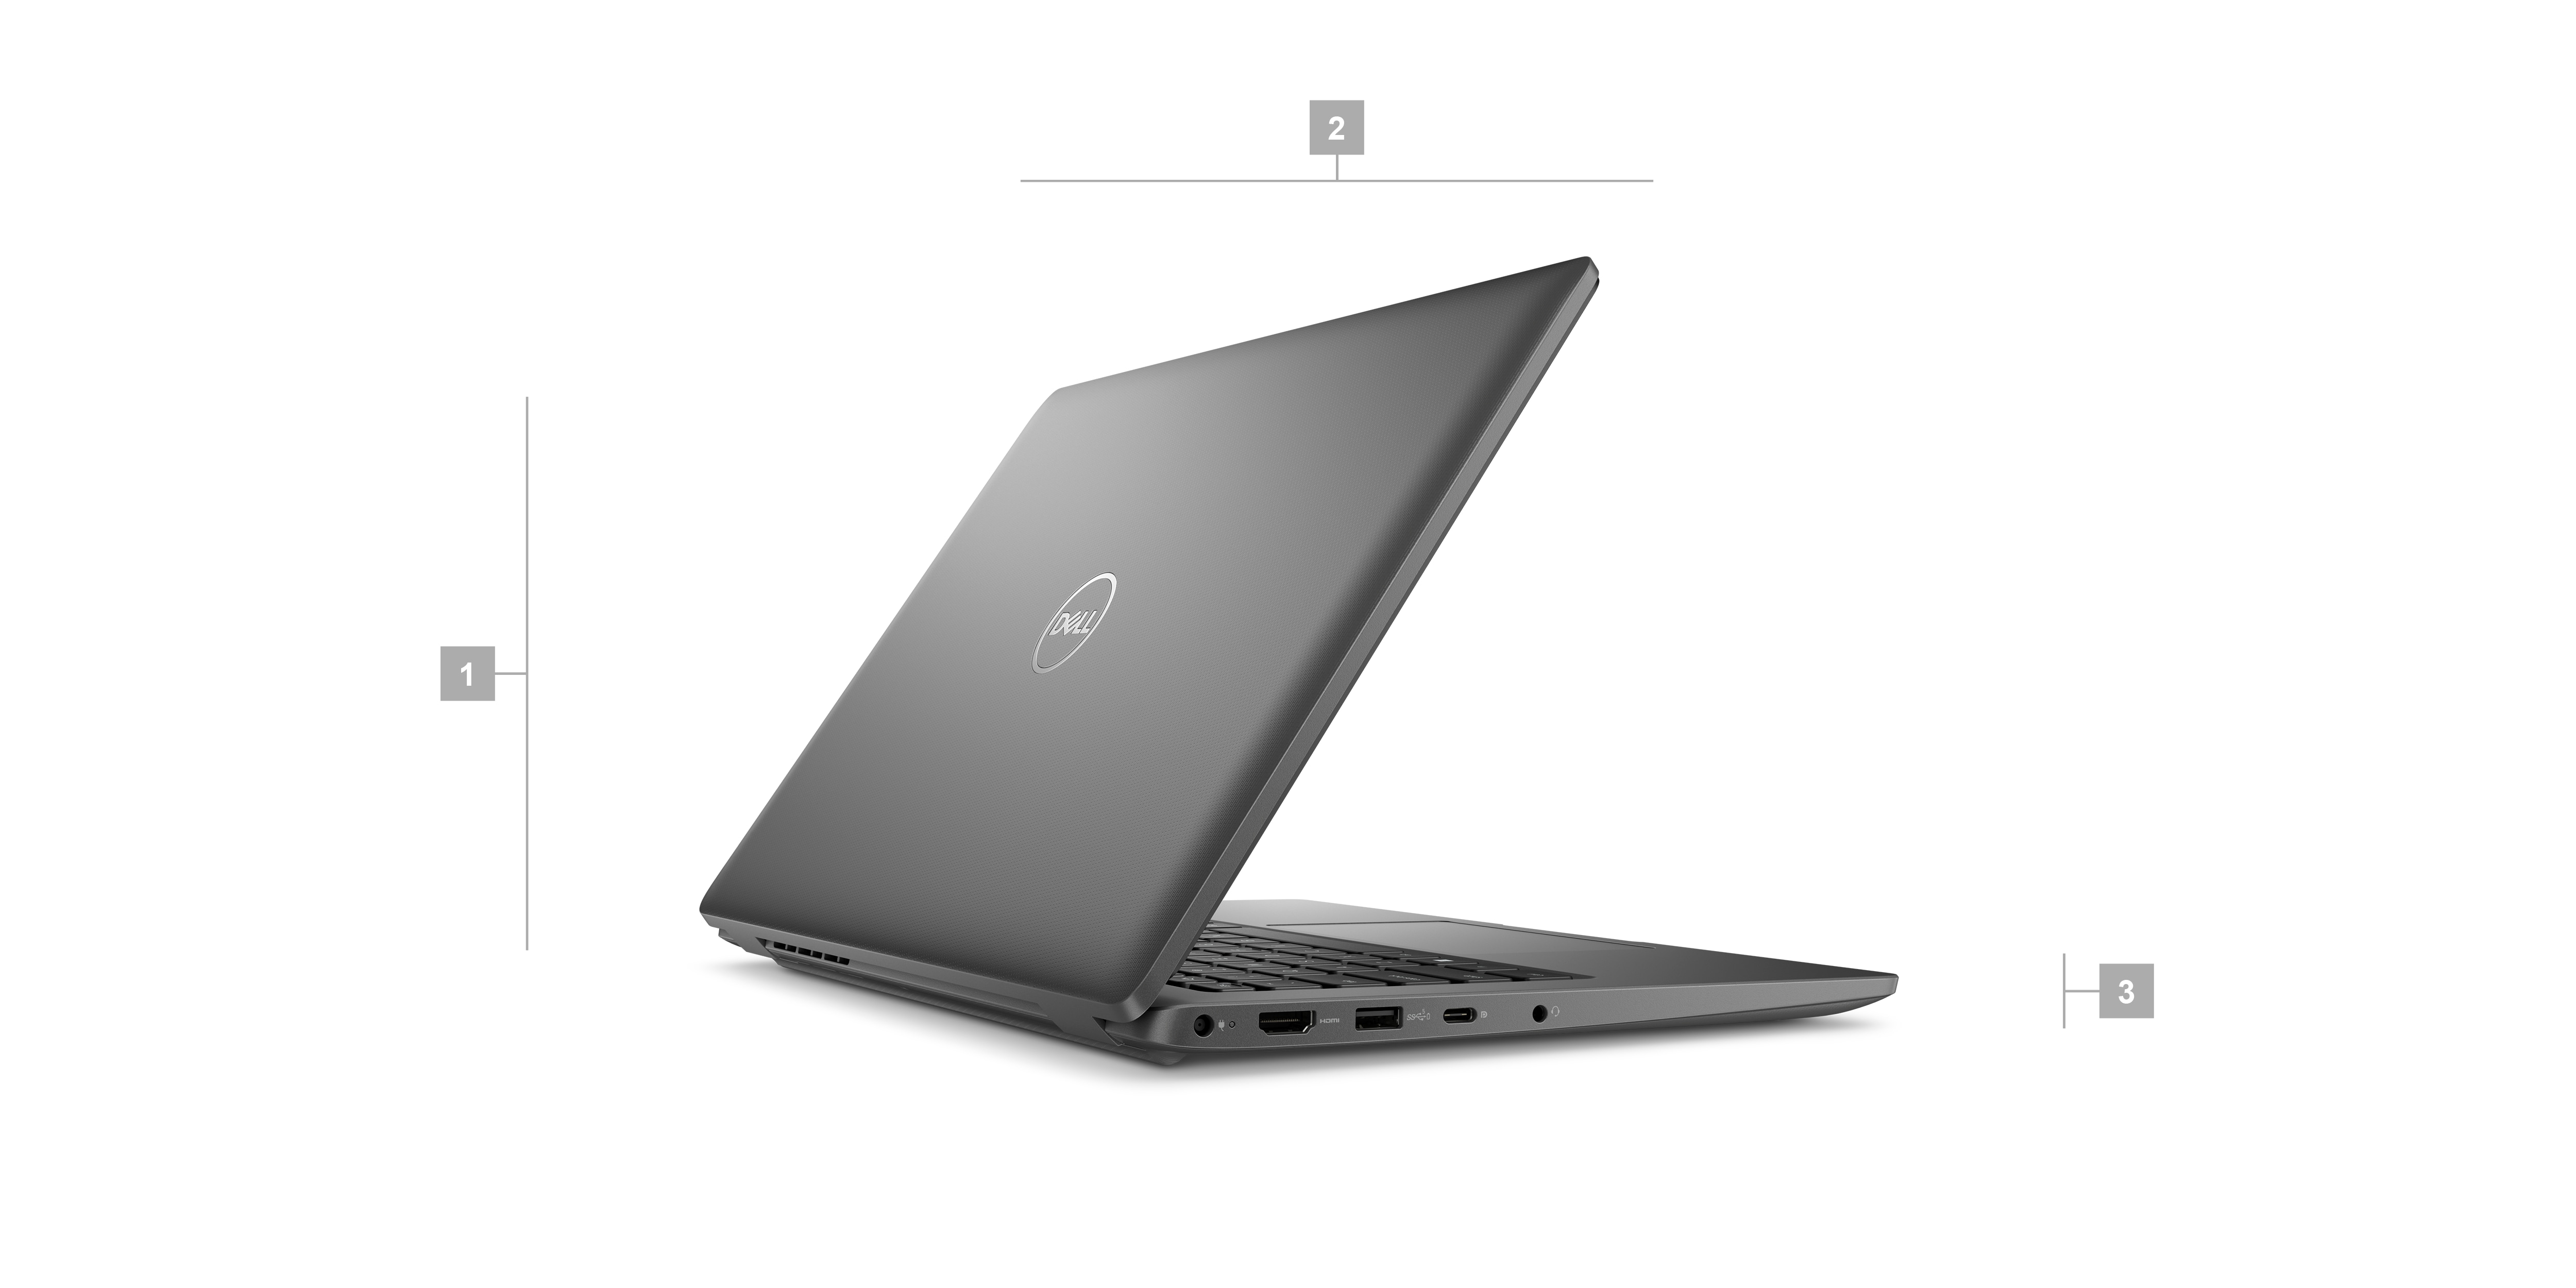 Dell Latitude 3440-Laptop mit Ziffern von 1 bis 3, die die Abmessungen und das Gewicht des Produkts kennzeichnen.